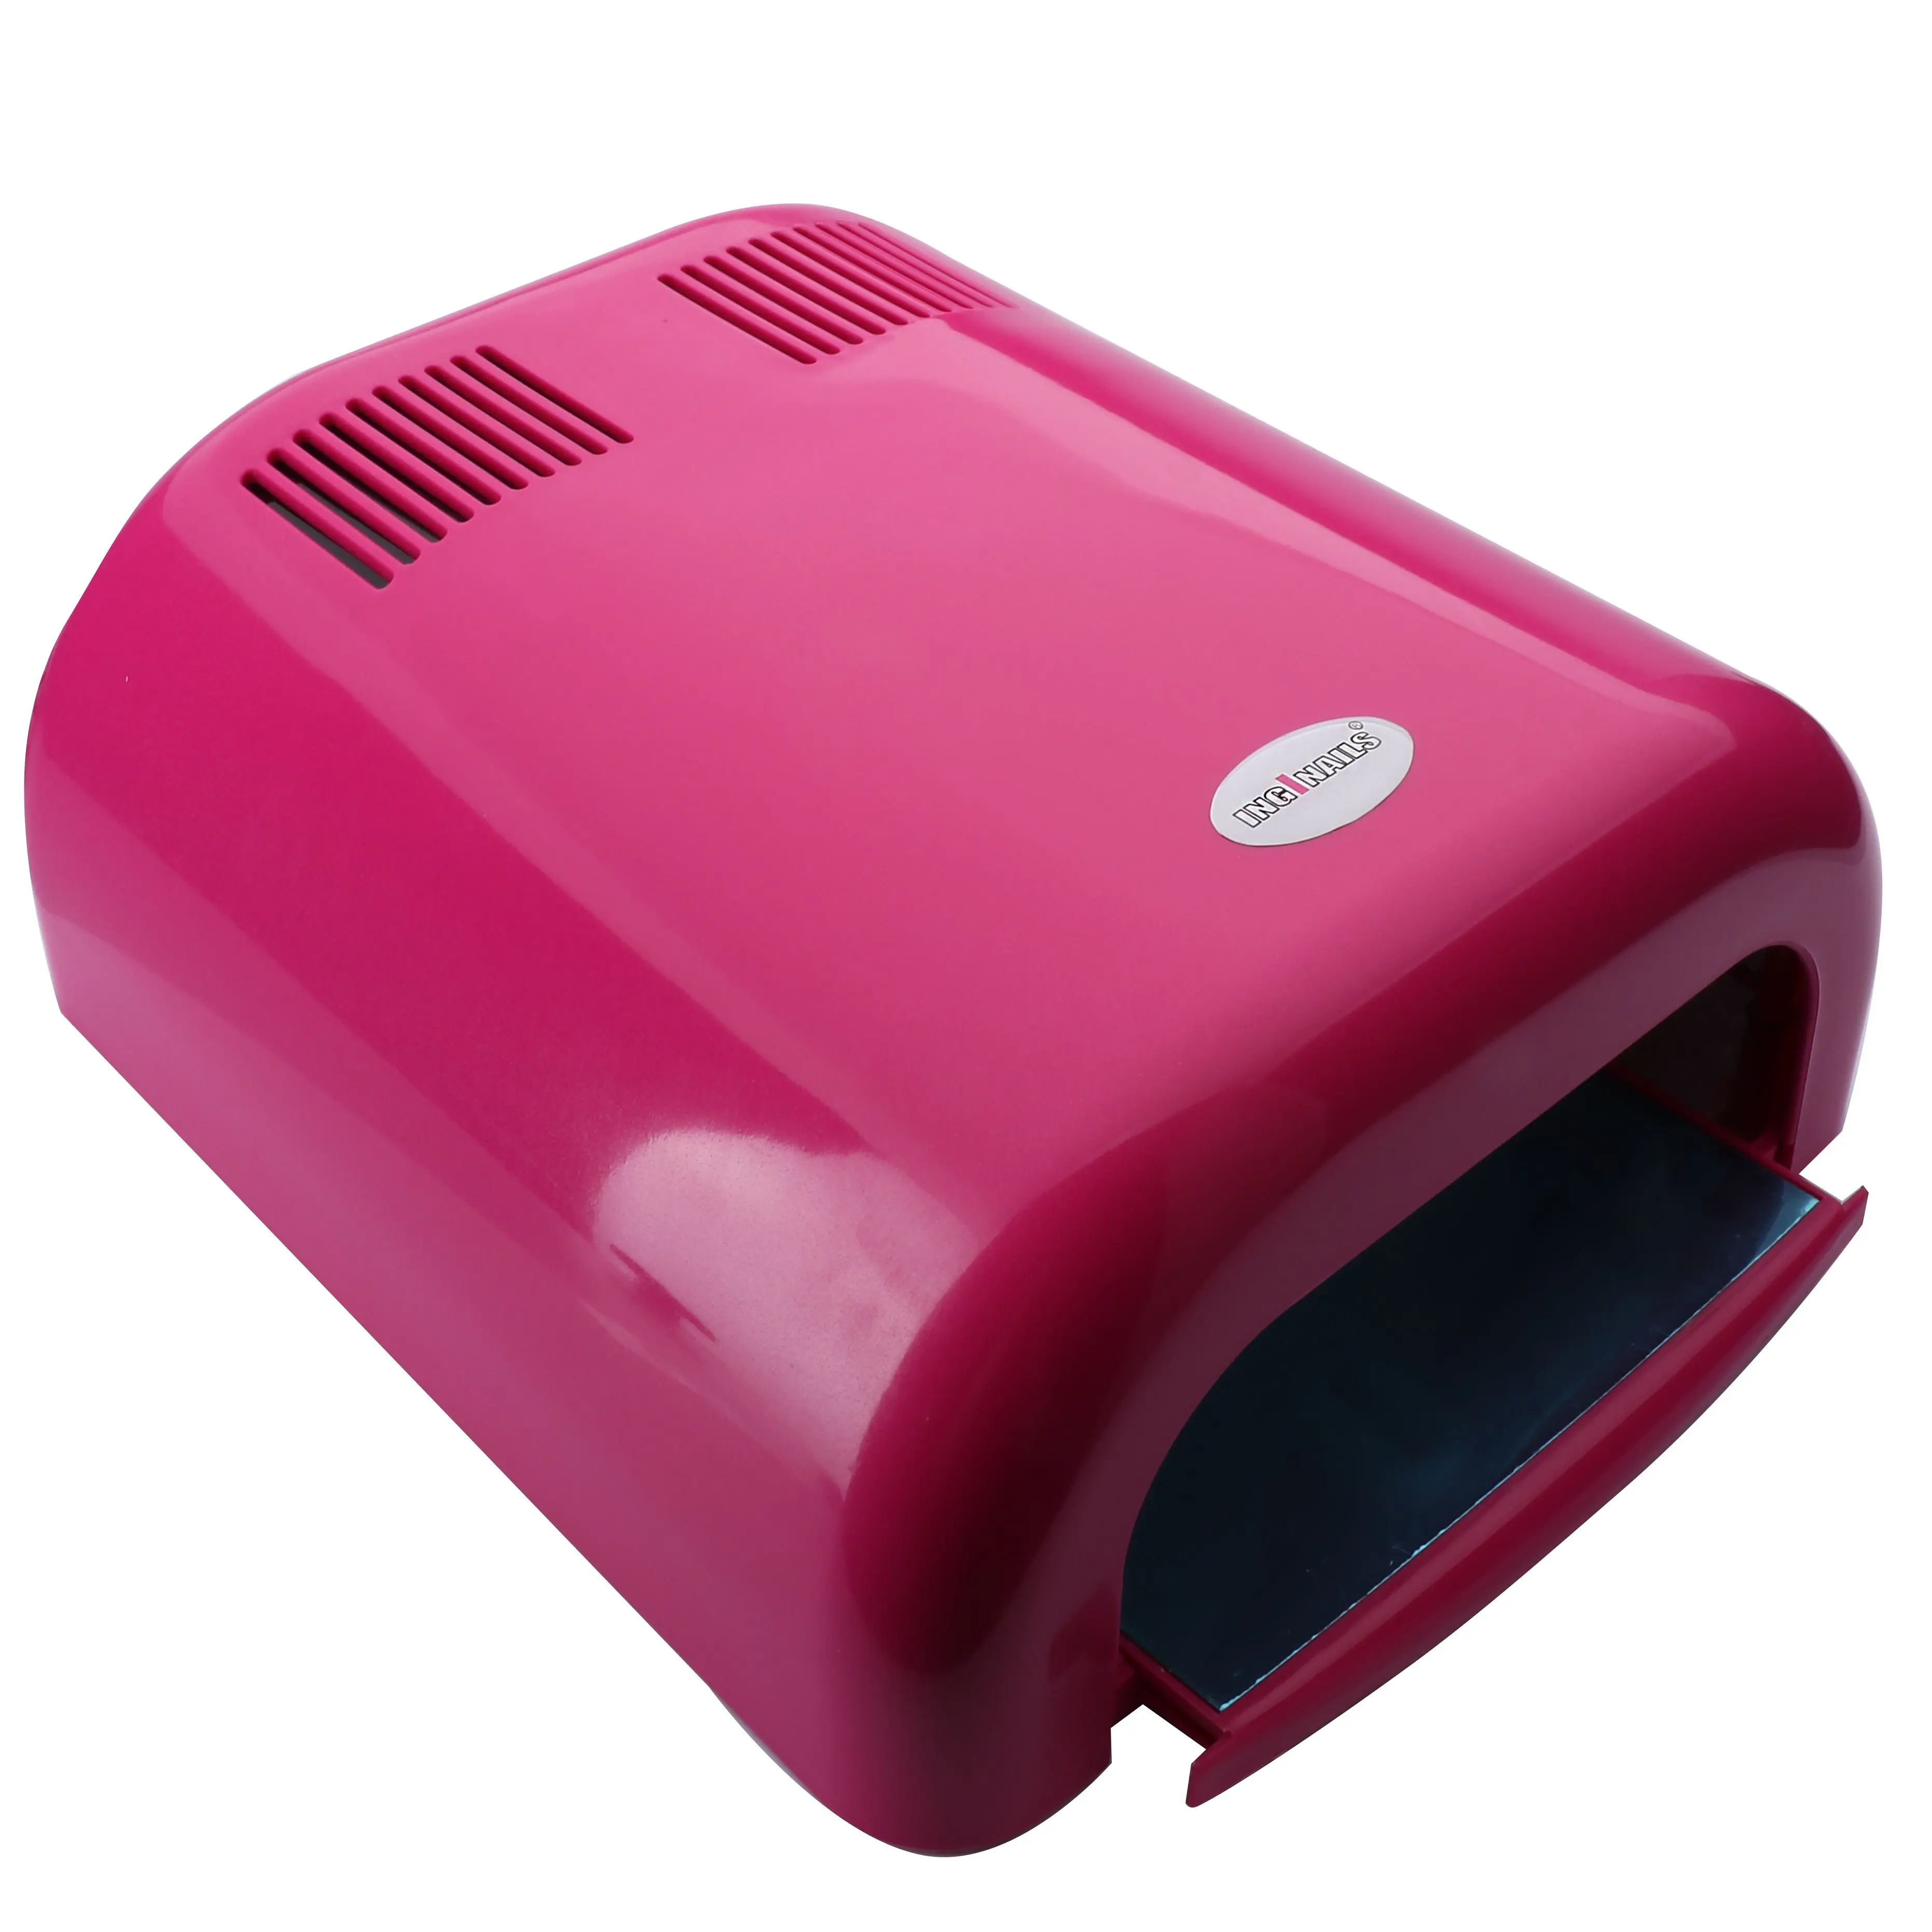 Rózsaszín UV lámpa Inginails - 36W, 120s időkapcsoló/műkörmös lámpa